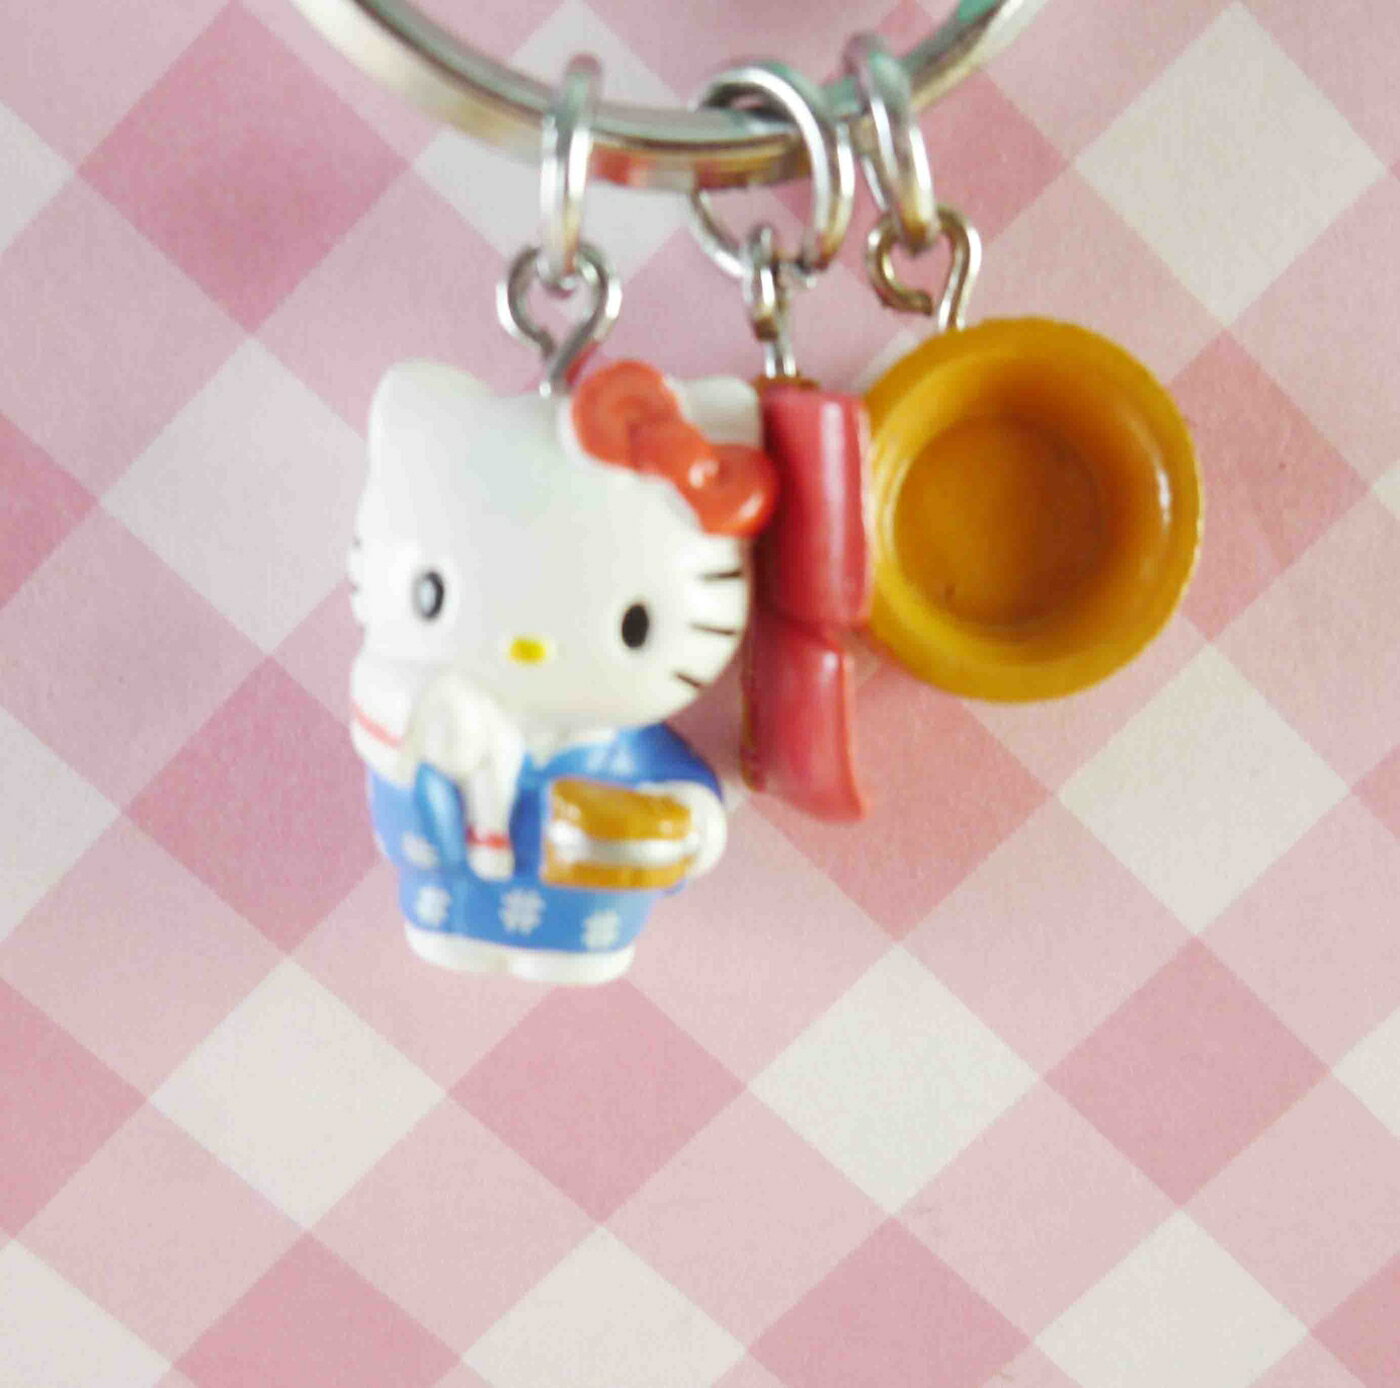 【震撼精品百貨】Hello Kitty 凱蒂貓 鎖圈-溫泉 震撼日式精品百貨